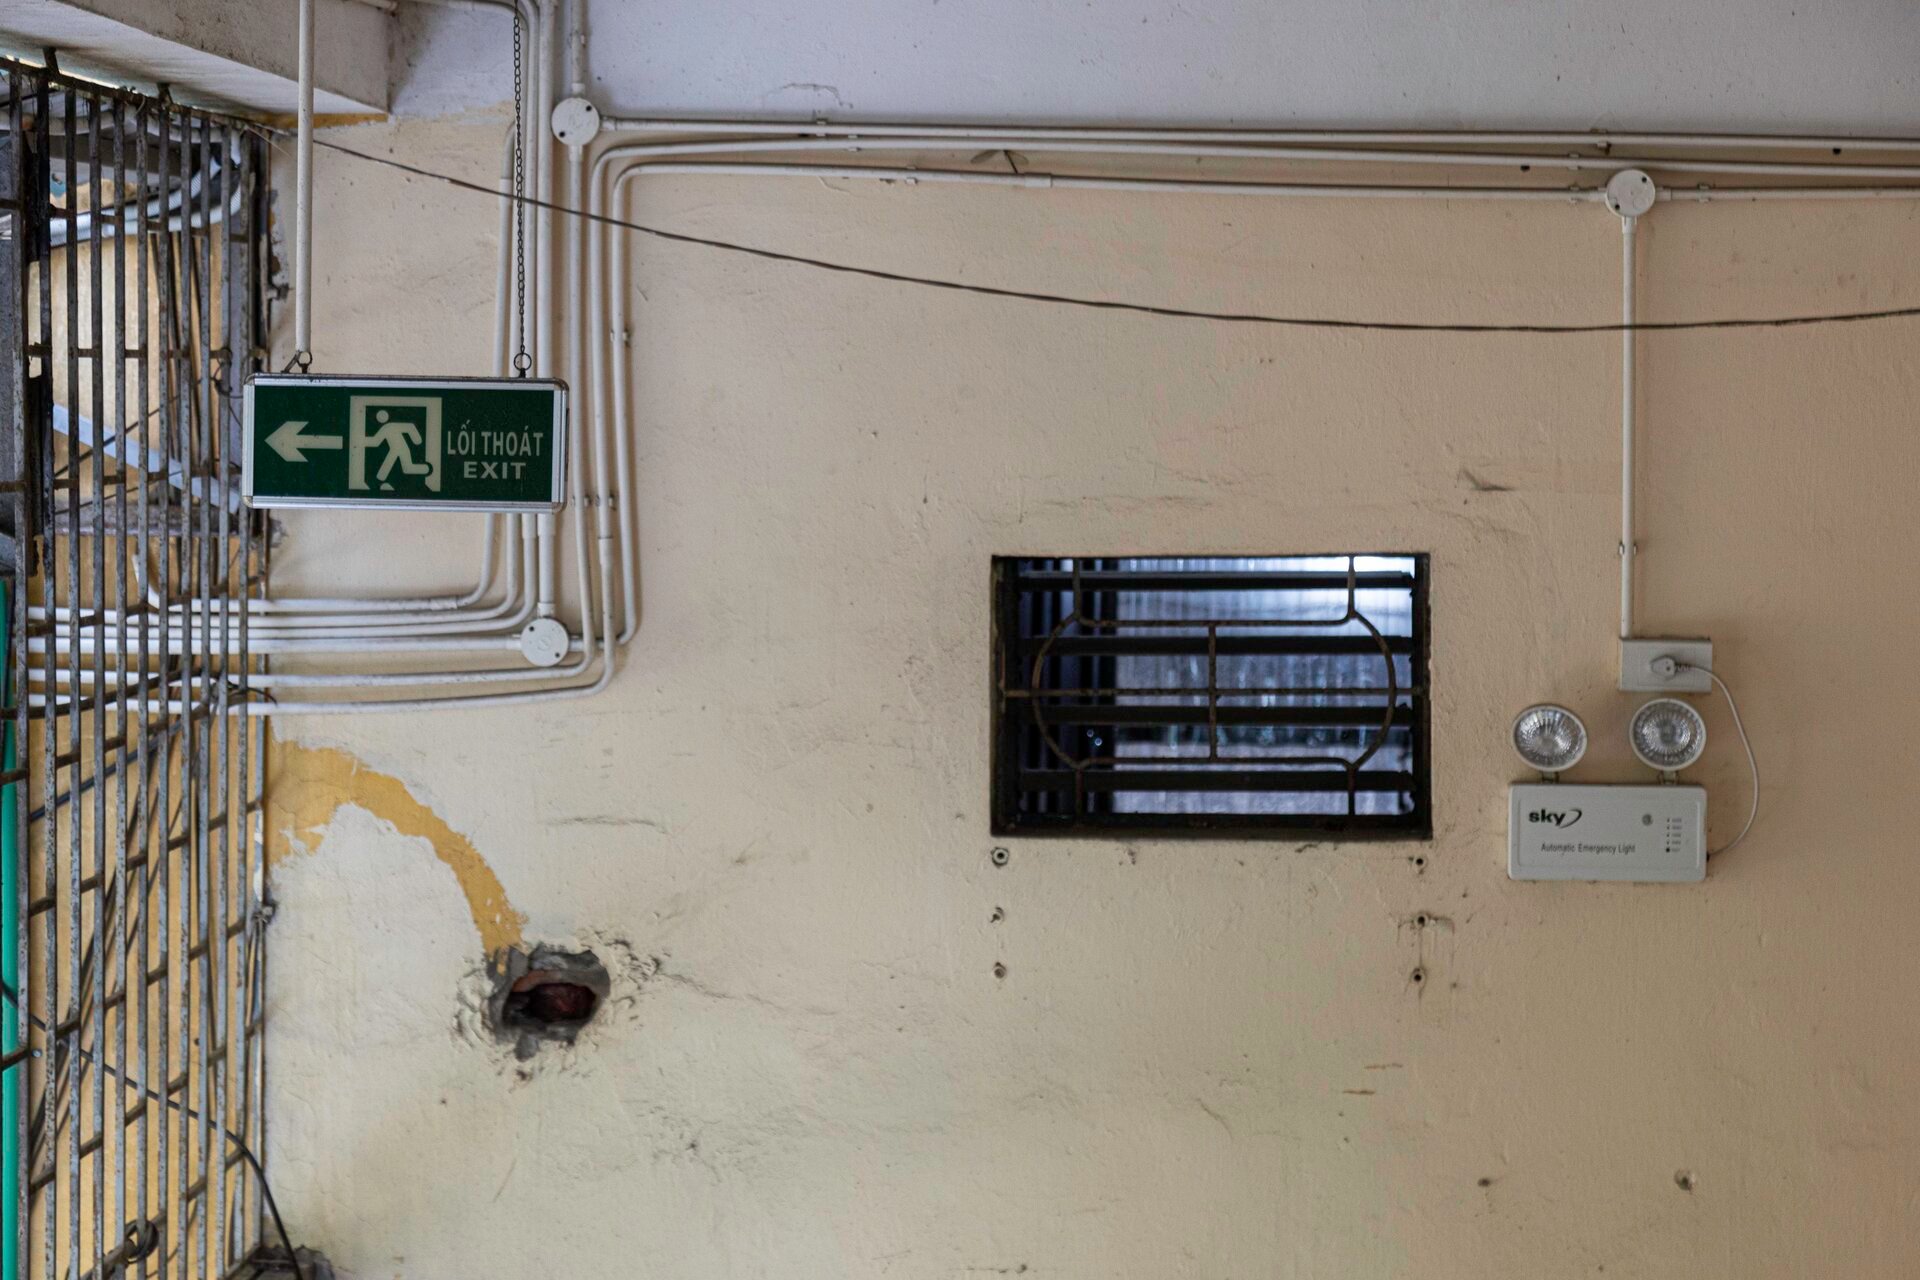 Ma trận chuồng cọp san sát ở Hà Nội: Những khung sắt nhốt người trong hỏa hoạn - 24